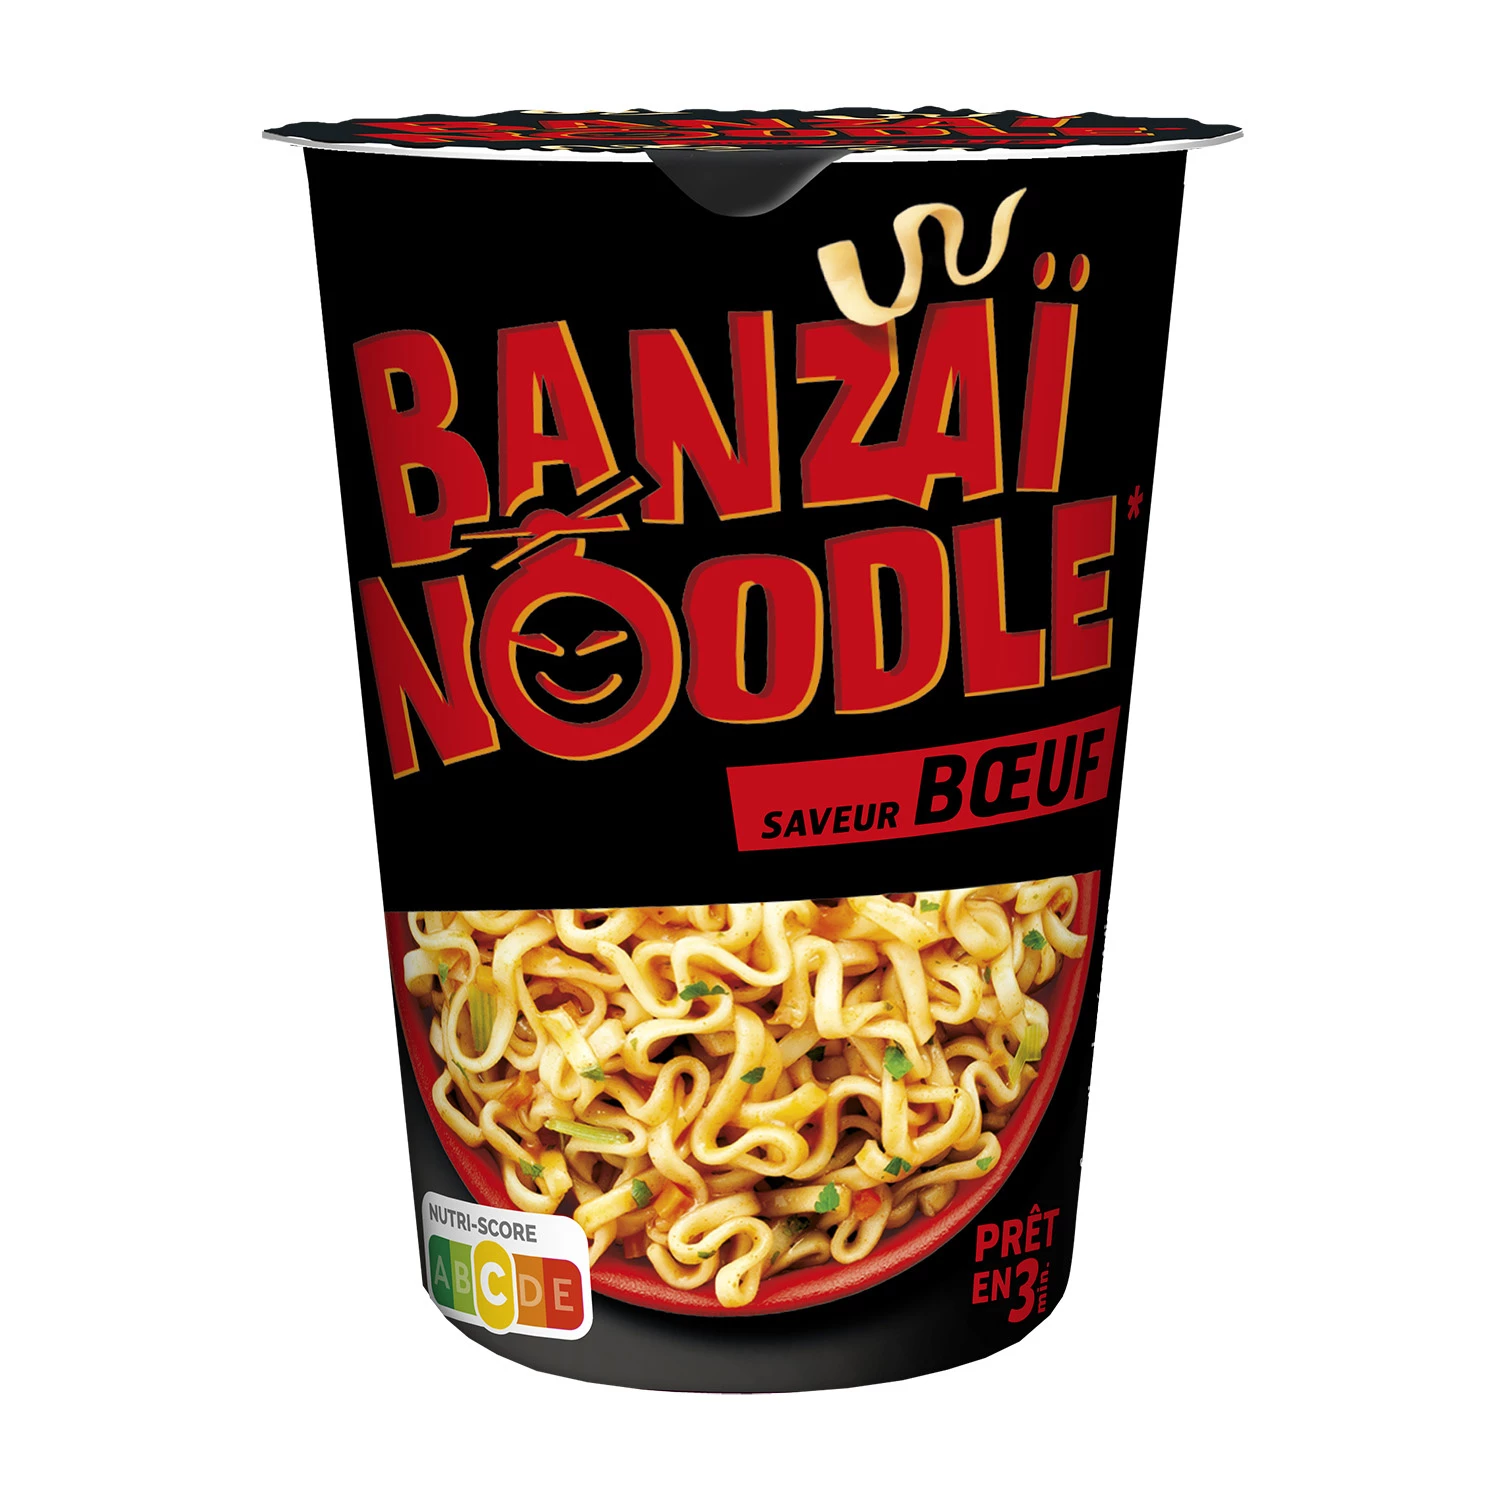 Banzai Noodle Boeuf 60g